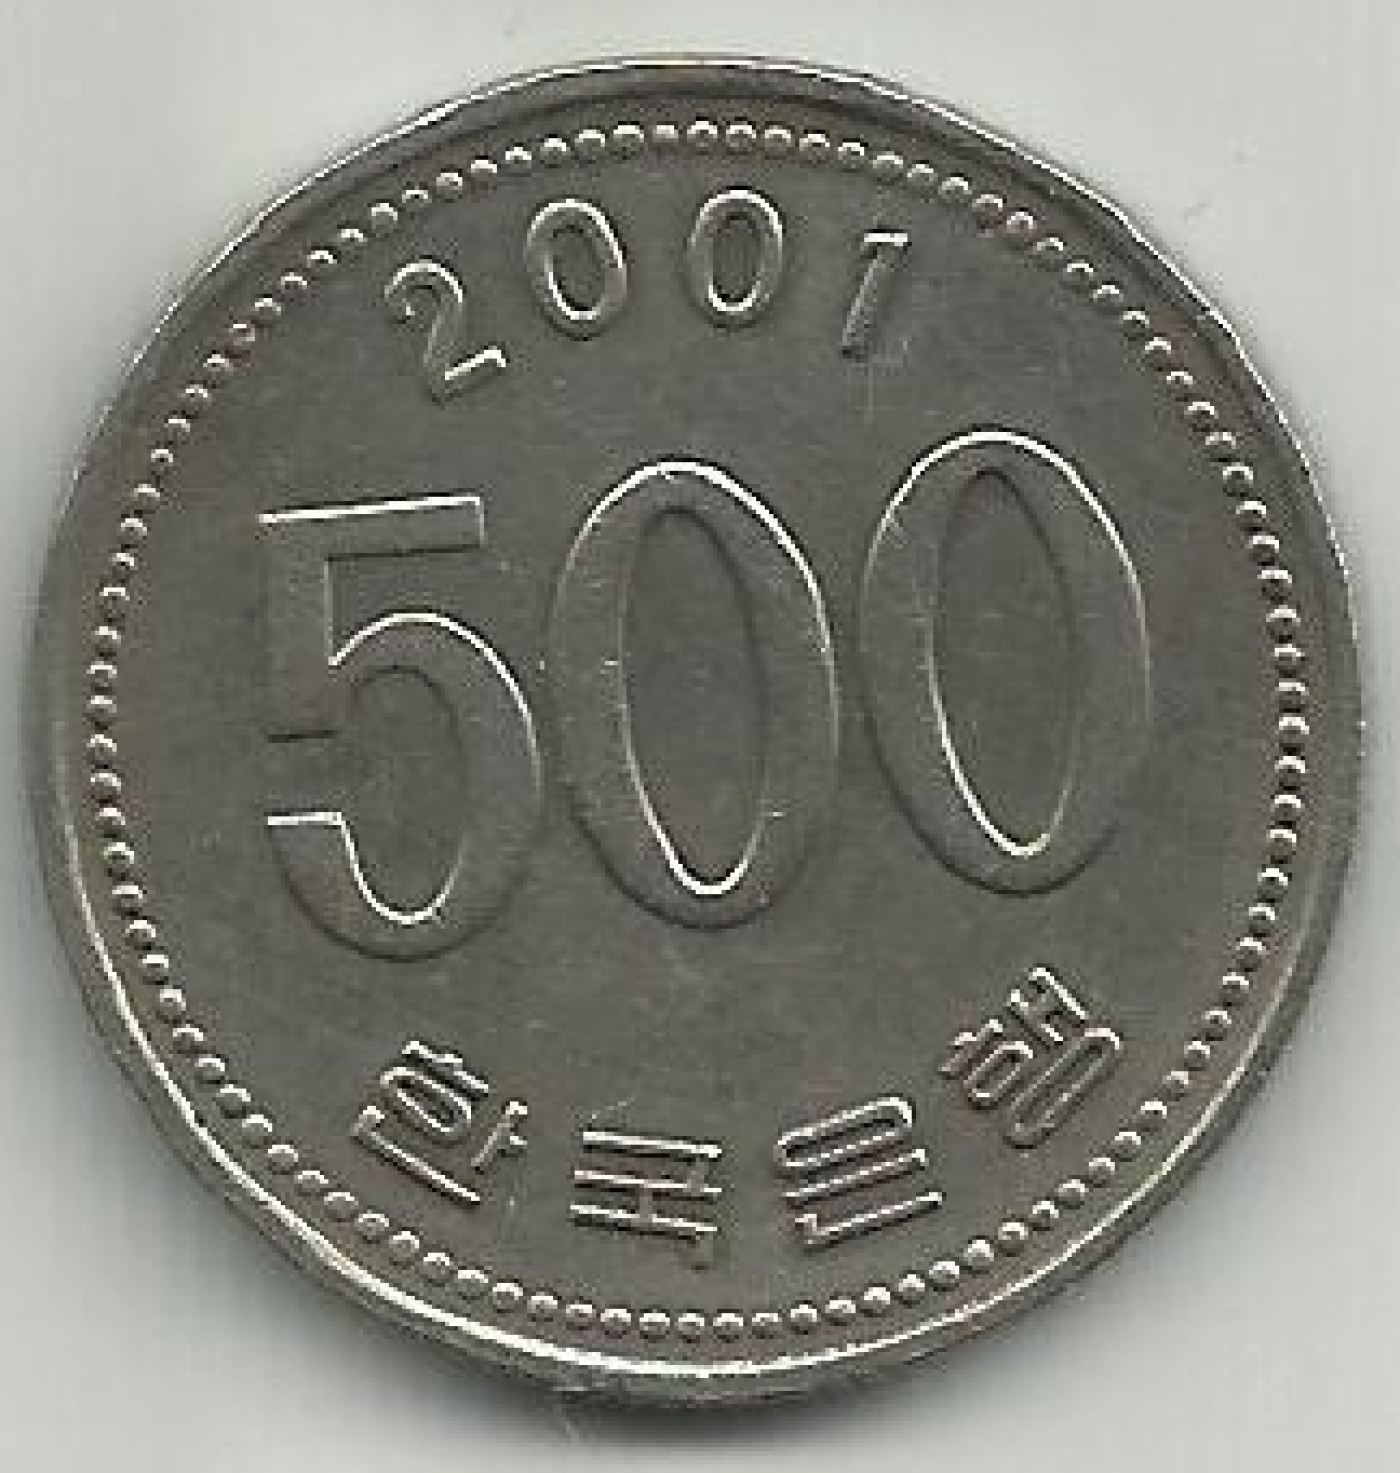 500 won coin